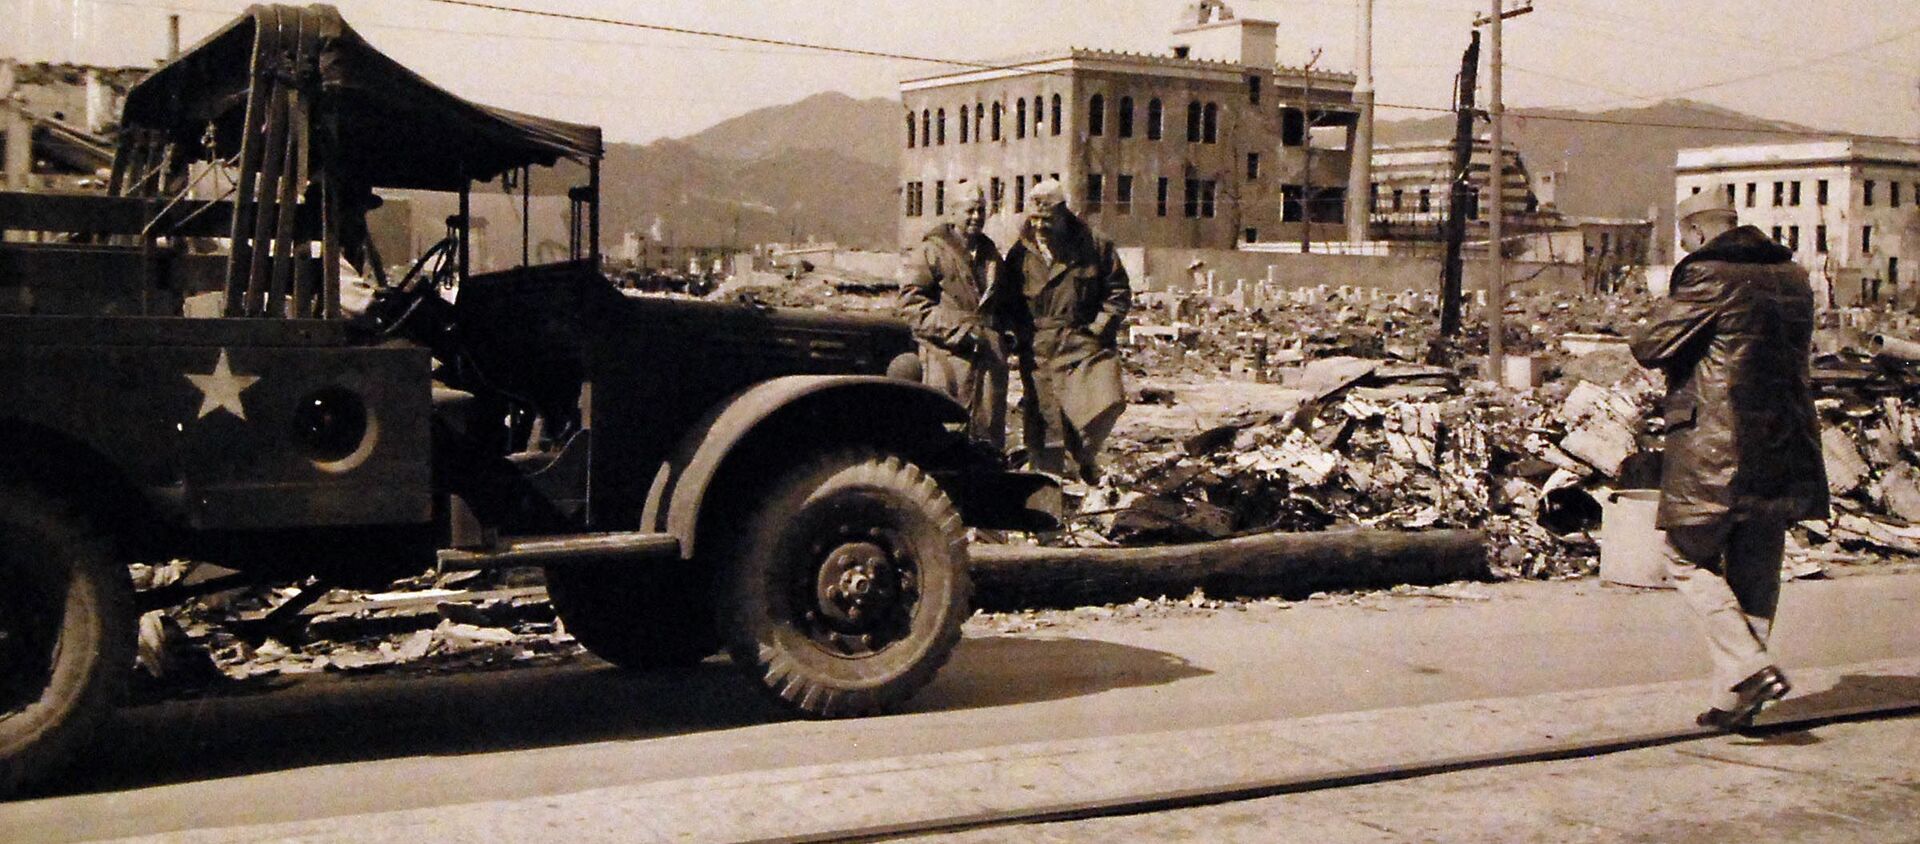 Американские военные на улицах разрушенной Хиросимы после атомных бомбардировок, Япония  - Sputnik Ўзбекистон, 1920, 05.03.2021